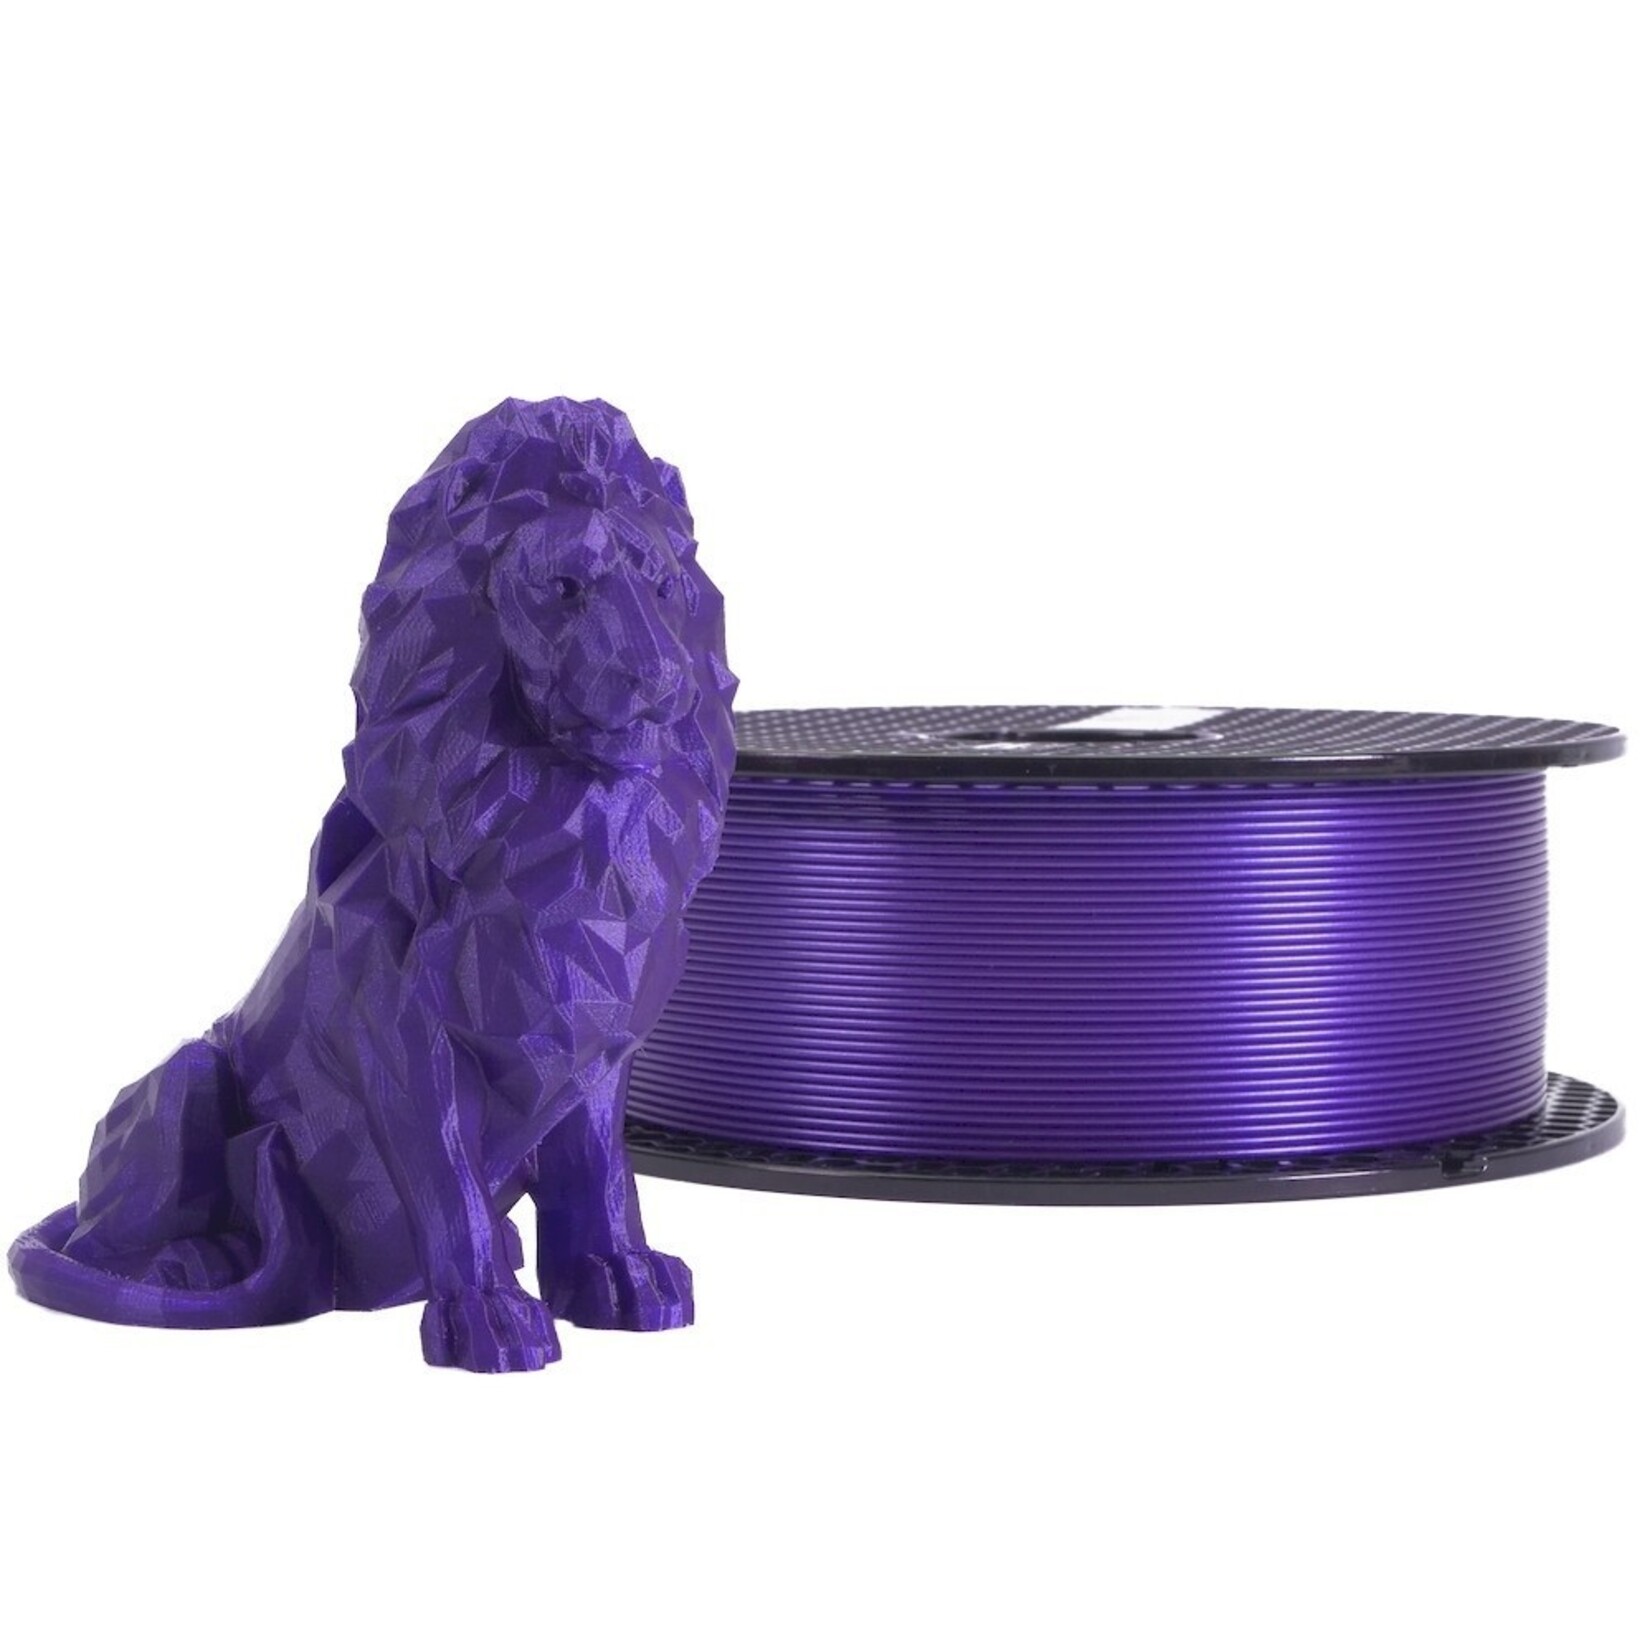 Prusa Research 1.75mm PLA 3d printer filament Prusament galaxy purple (glitter) 1kg